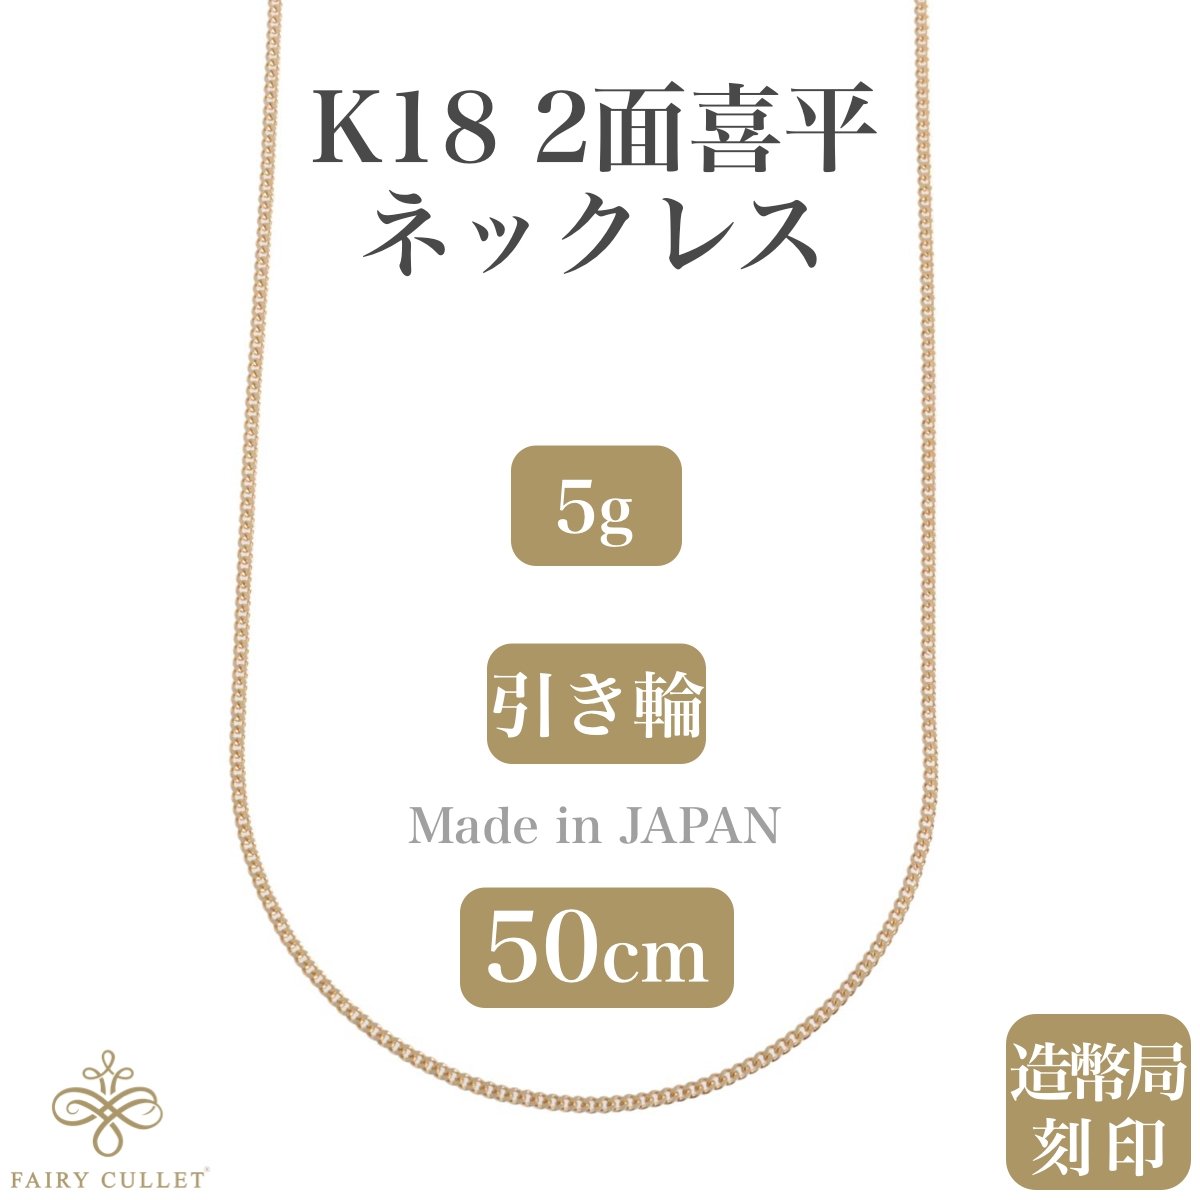 18金ネックレス K18 2面喜平チェーン 日本製 検定印 5g 50cm | www